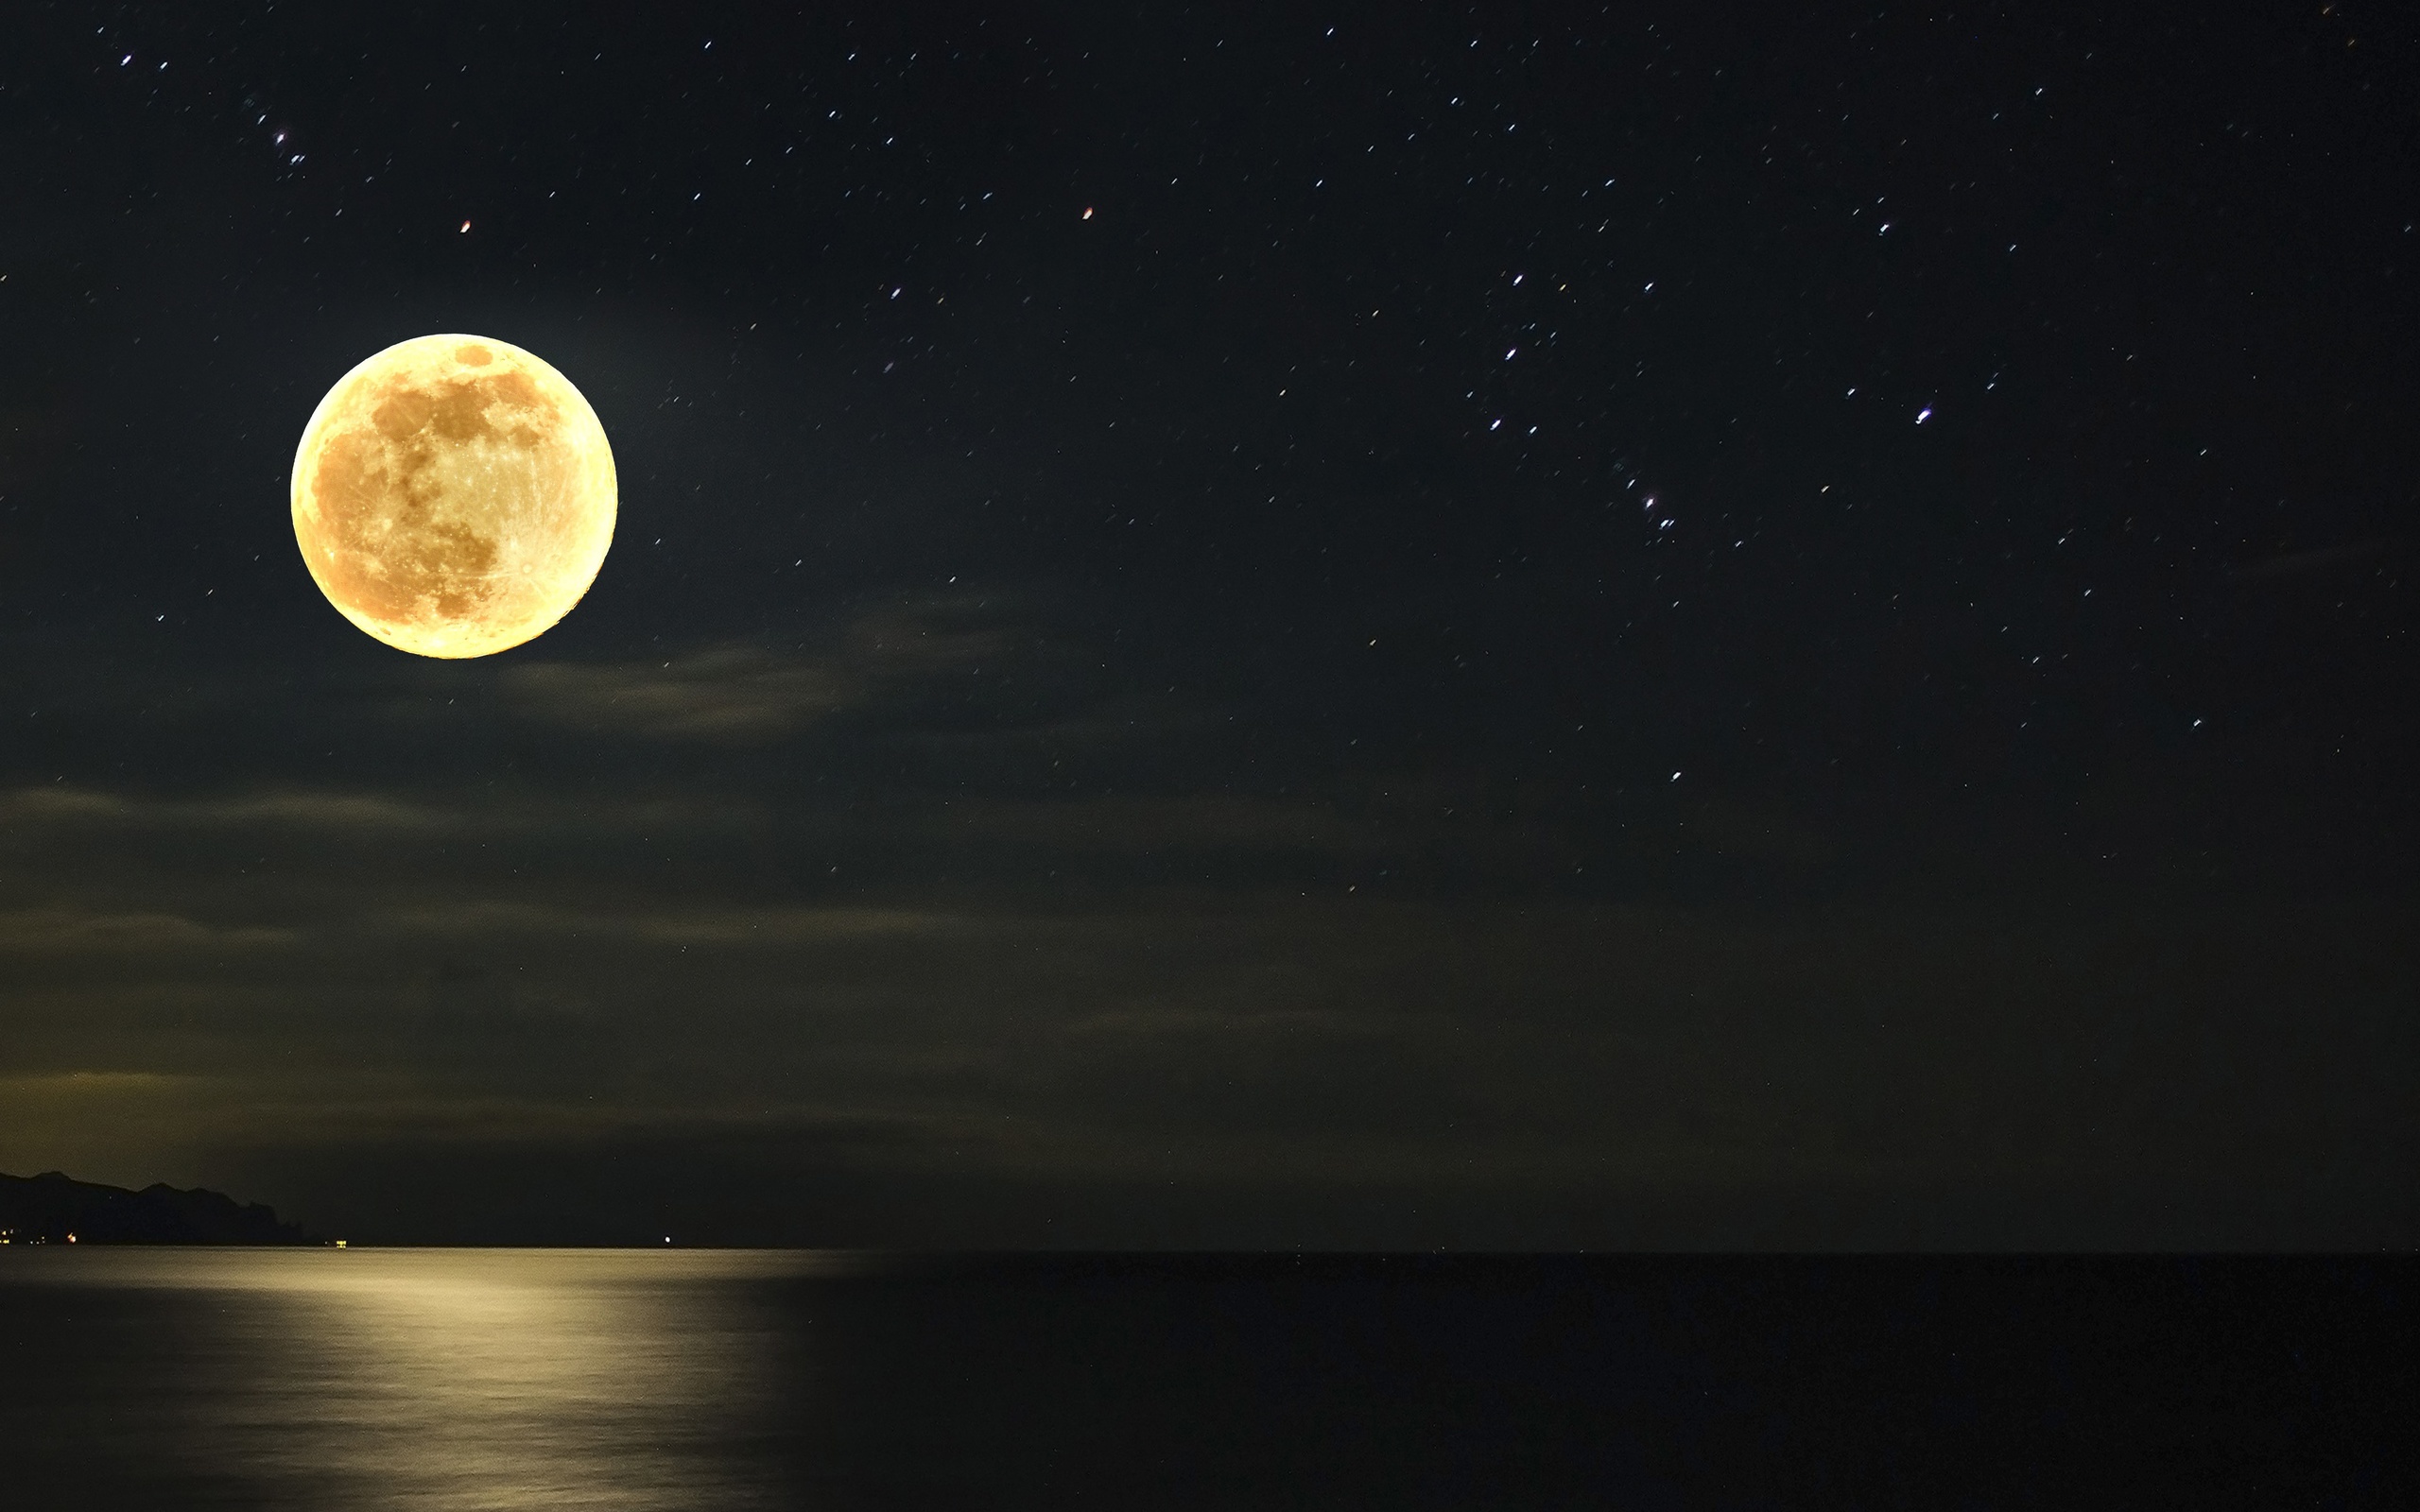 фото луна на ночном небе